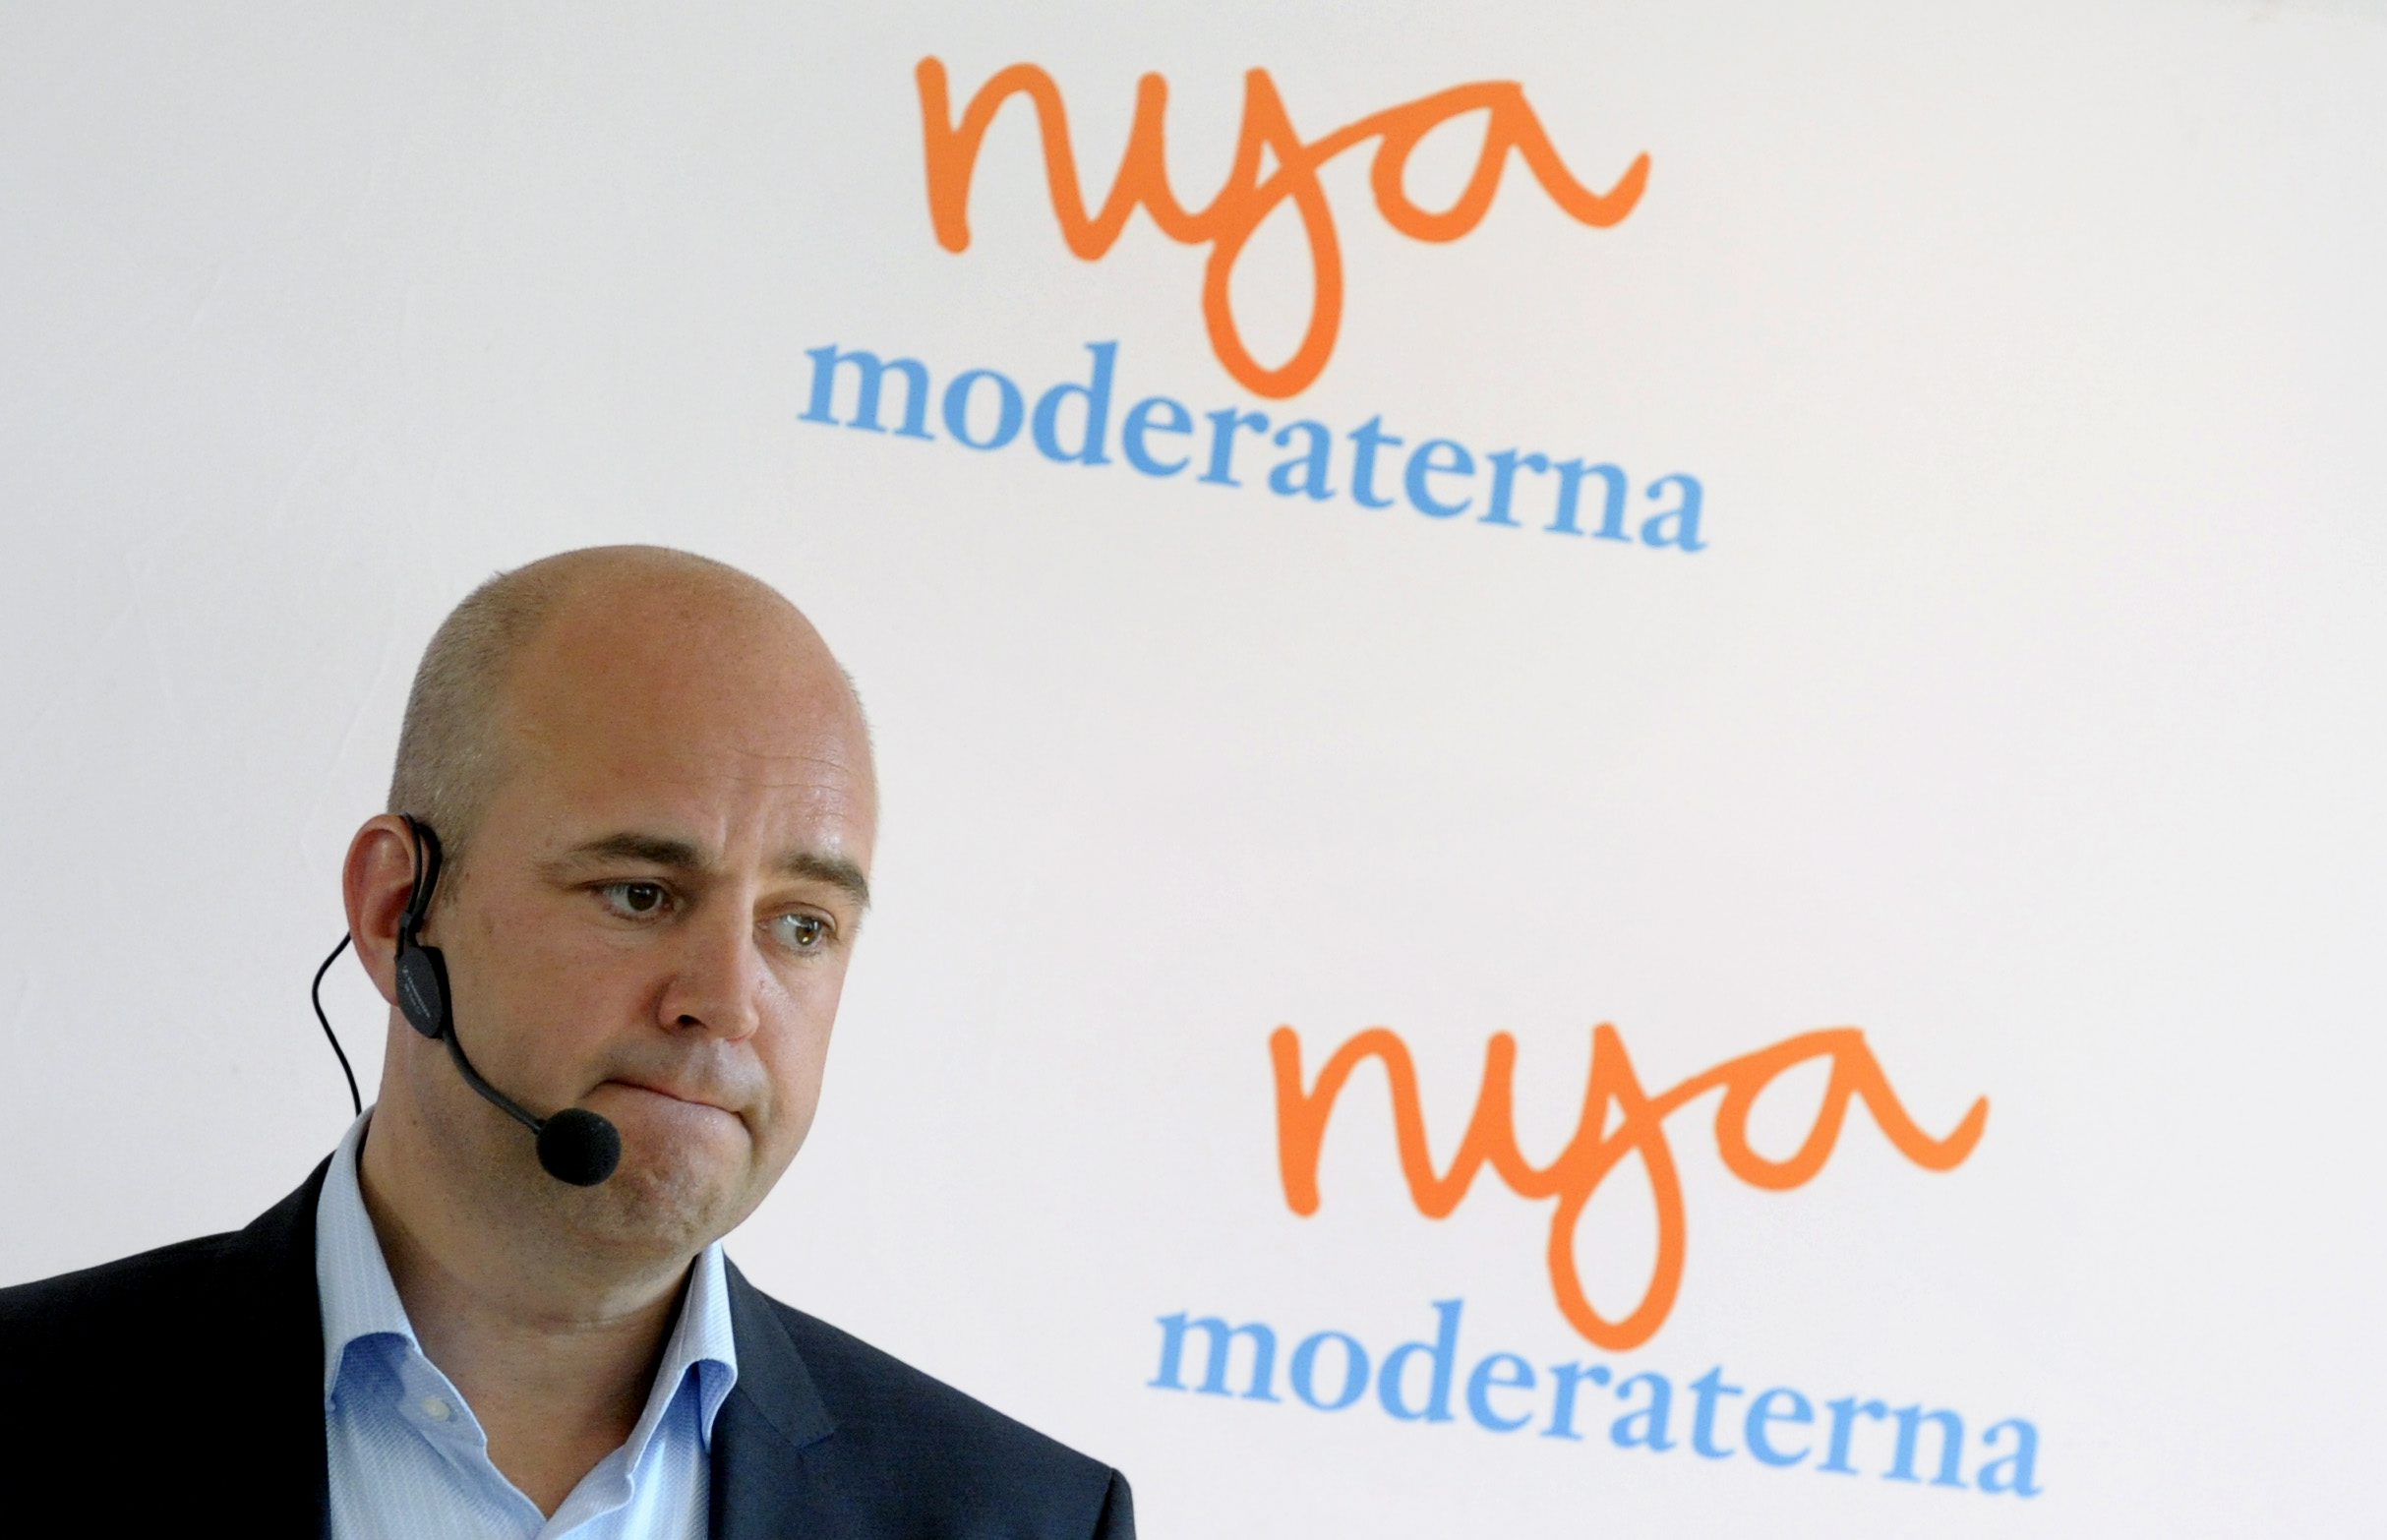 tal, Almedalen, Fredrik Reinfeldt, Almedalsveckan, Politik, Moderaterna